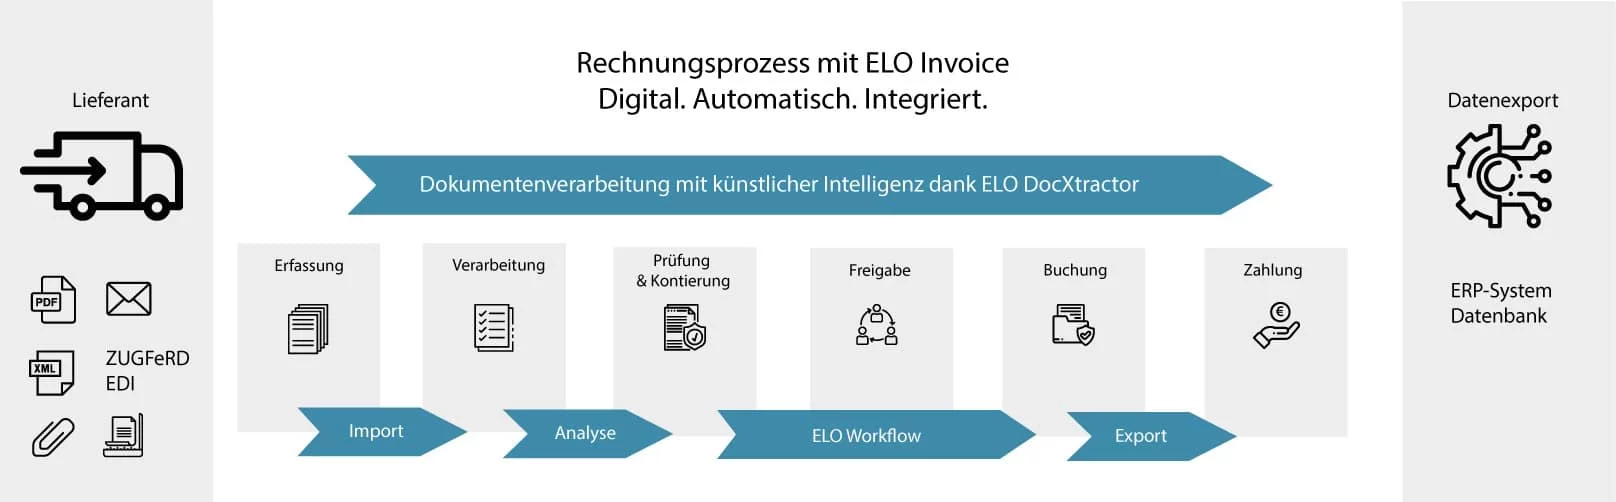 Rechnungsmanagement Prozess mit ELO Invoice